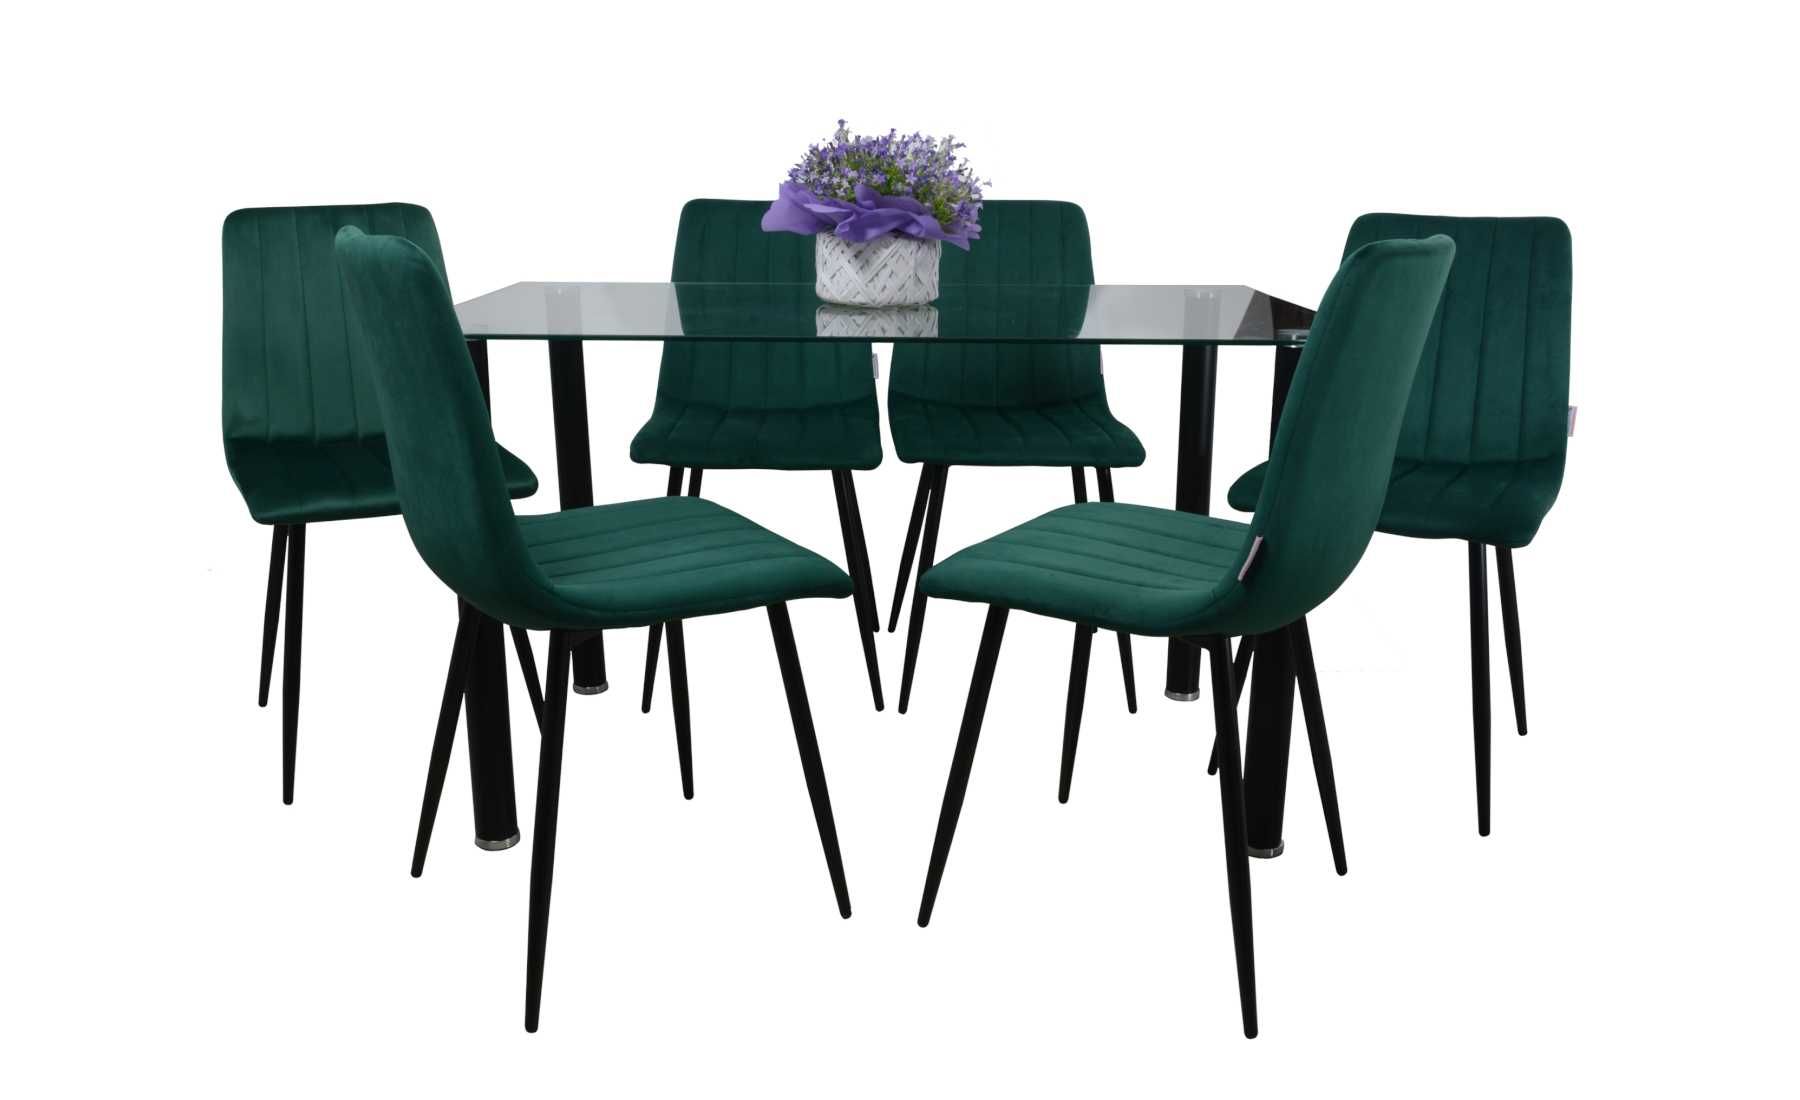 Stół przezroczysty wraz z 6 krzesłami w zieleni butelkowej nogi czarne